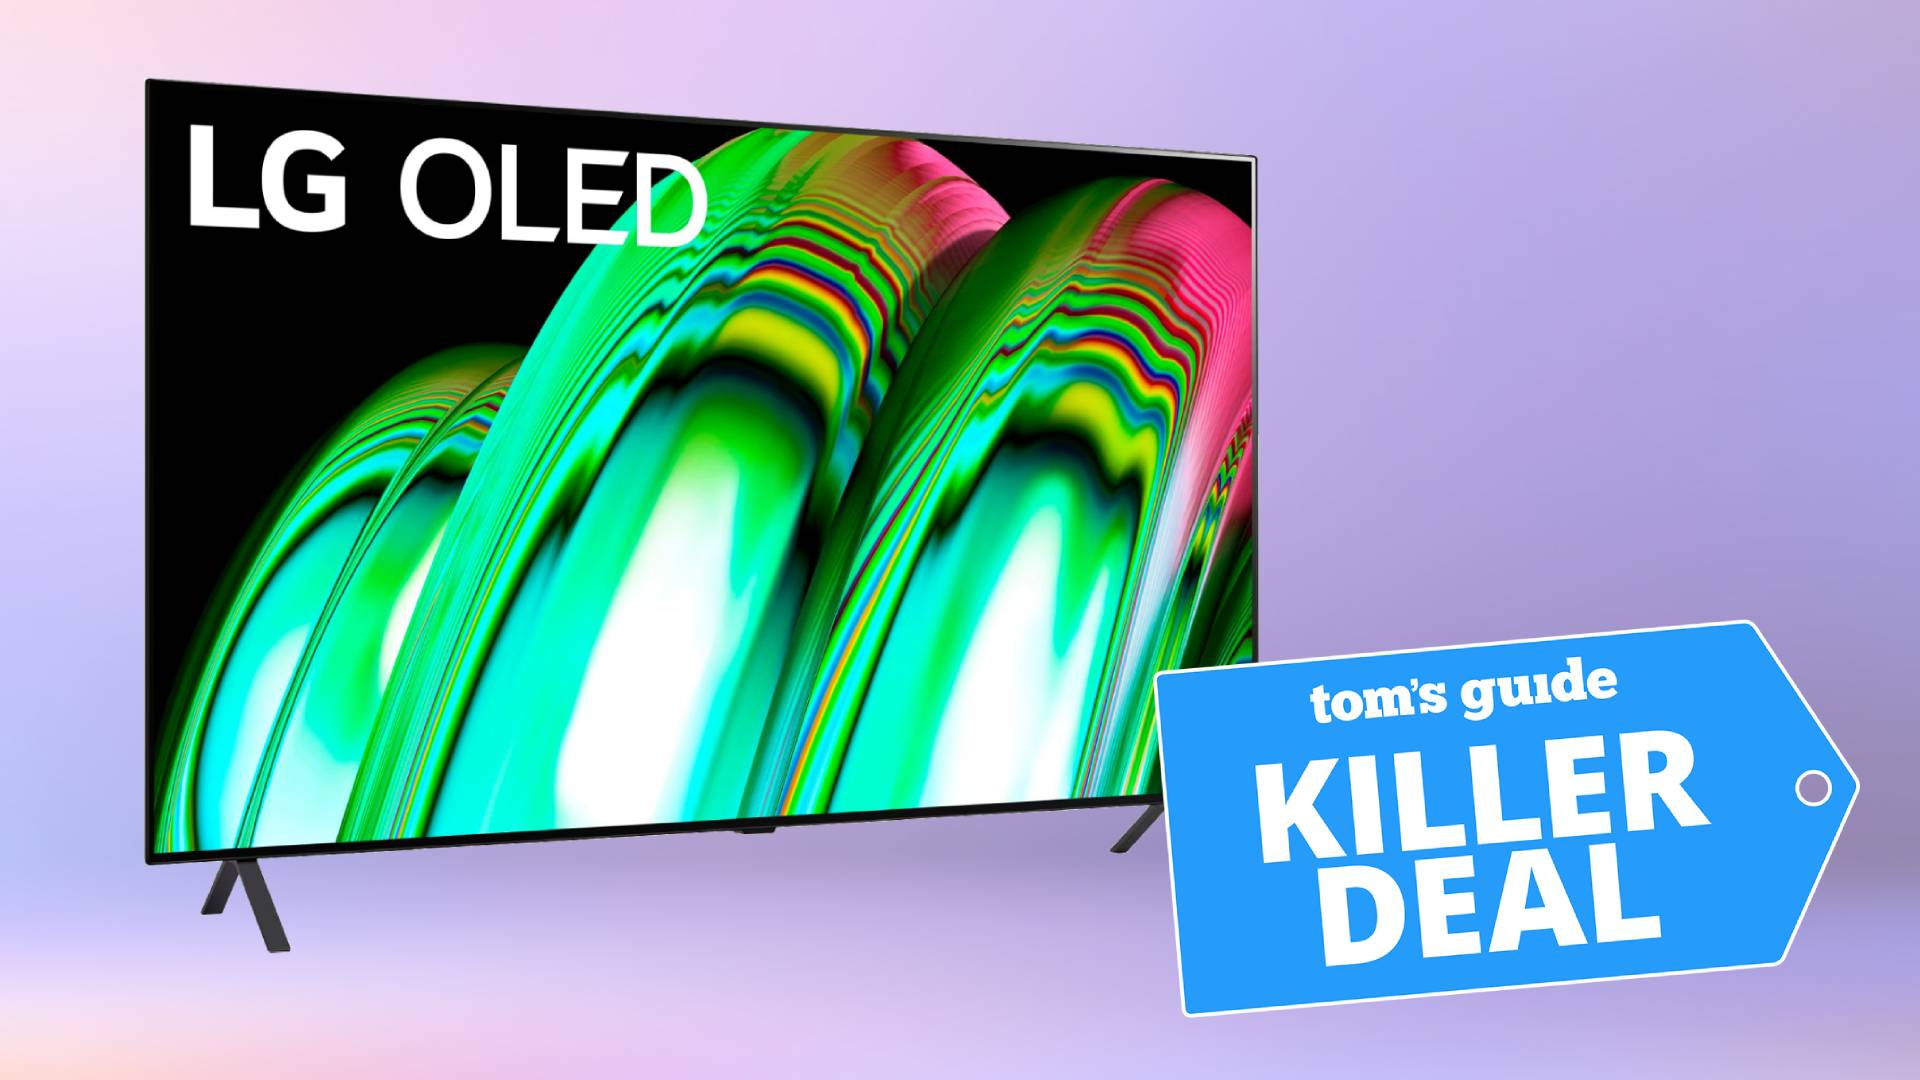 Retrato da TV LG A2 OLED 4K em um fundo roxo